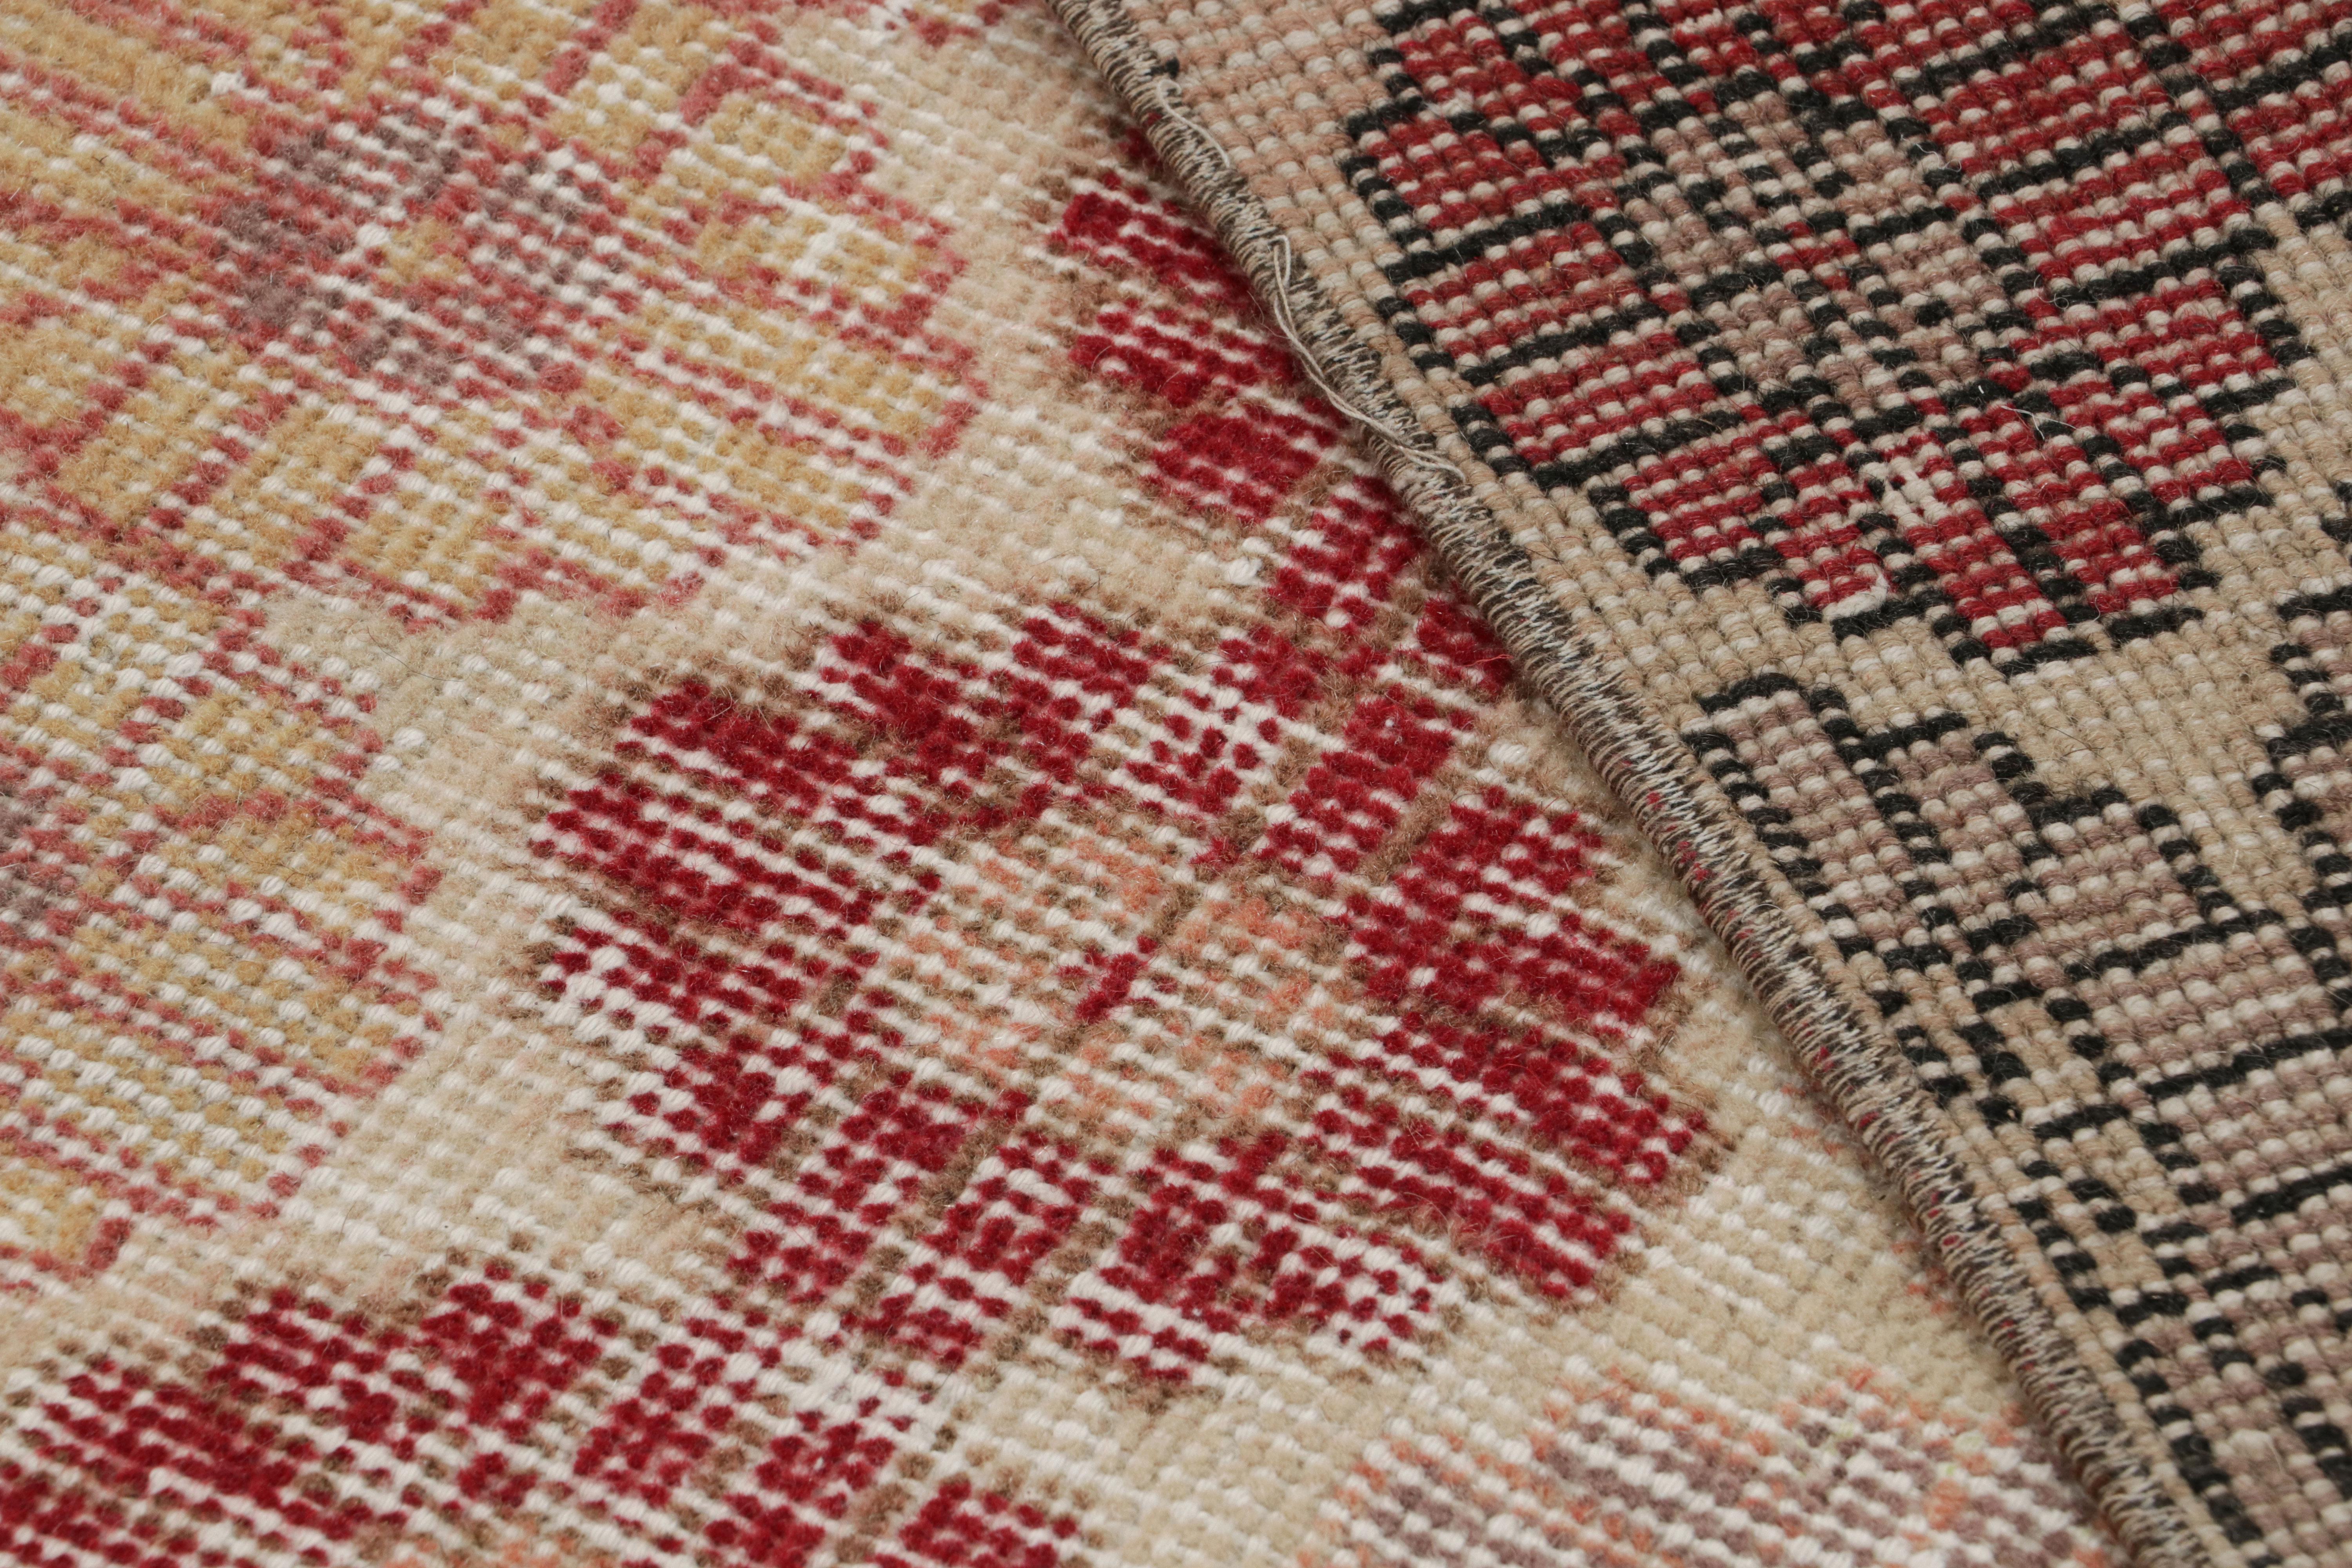 Wool Vintage Zeki Müren Runner Rug with Polychrome Floral Pattern, from Rug & Kilim For Sale